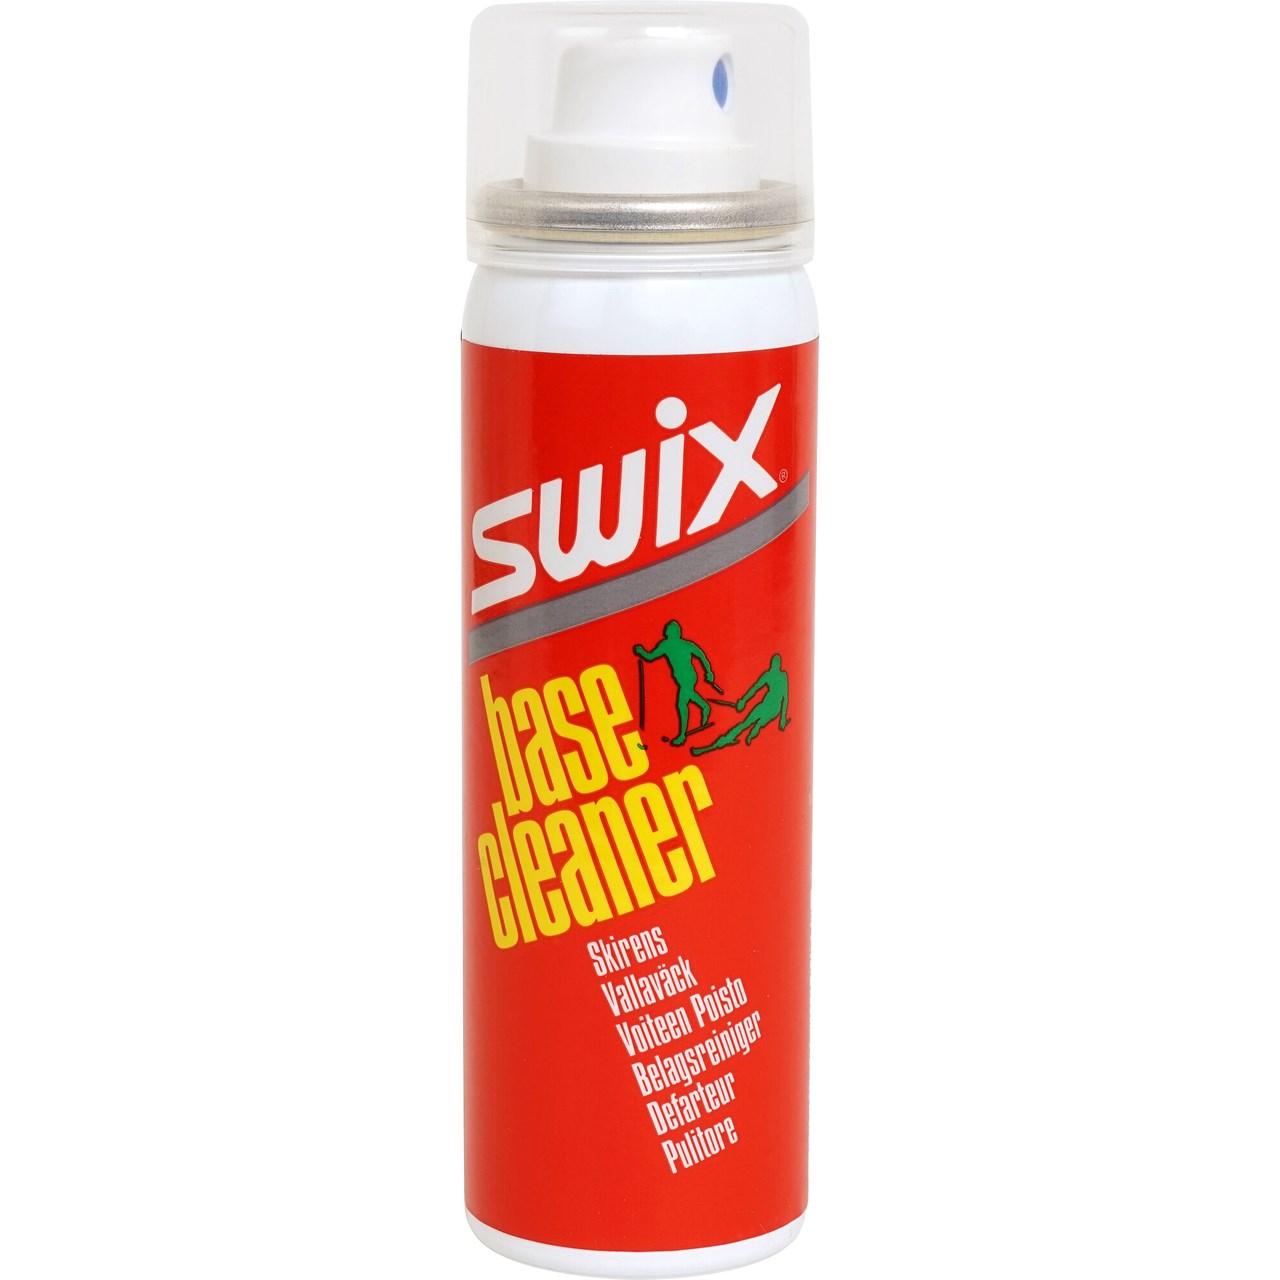 Swix Base cleaner 70 ml